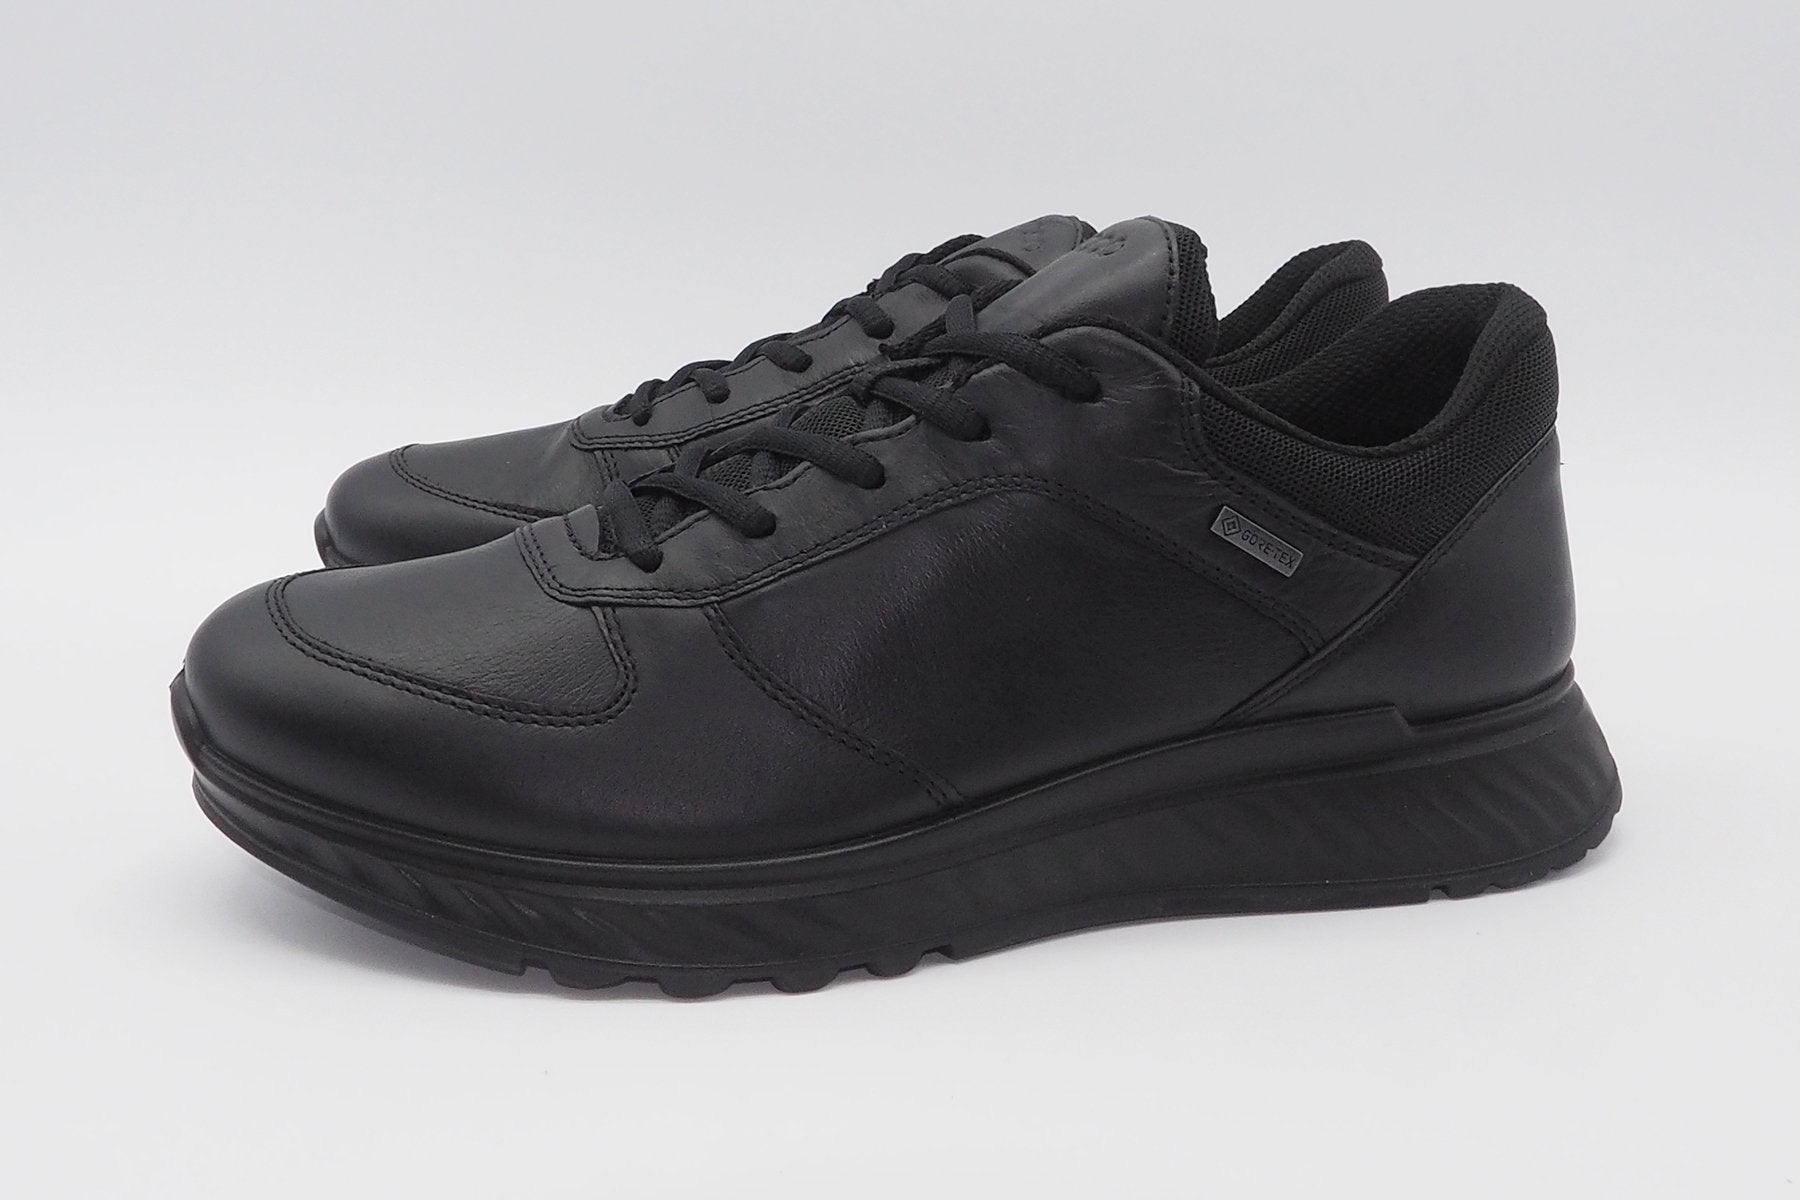 Herren Sneakers Wildleder Schuhe in schwarz